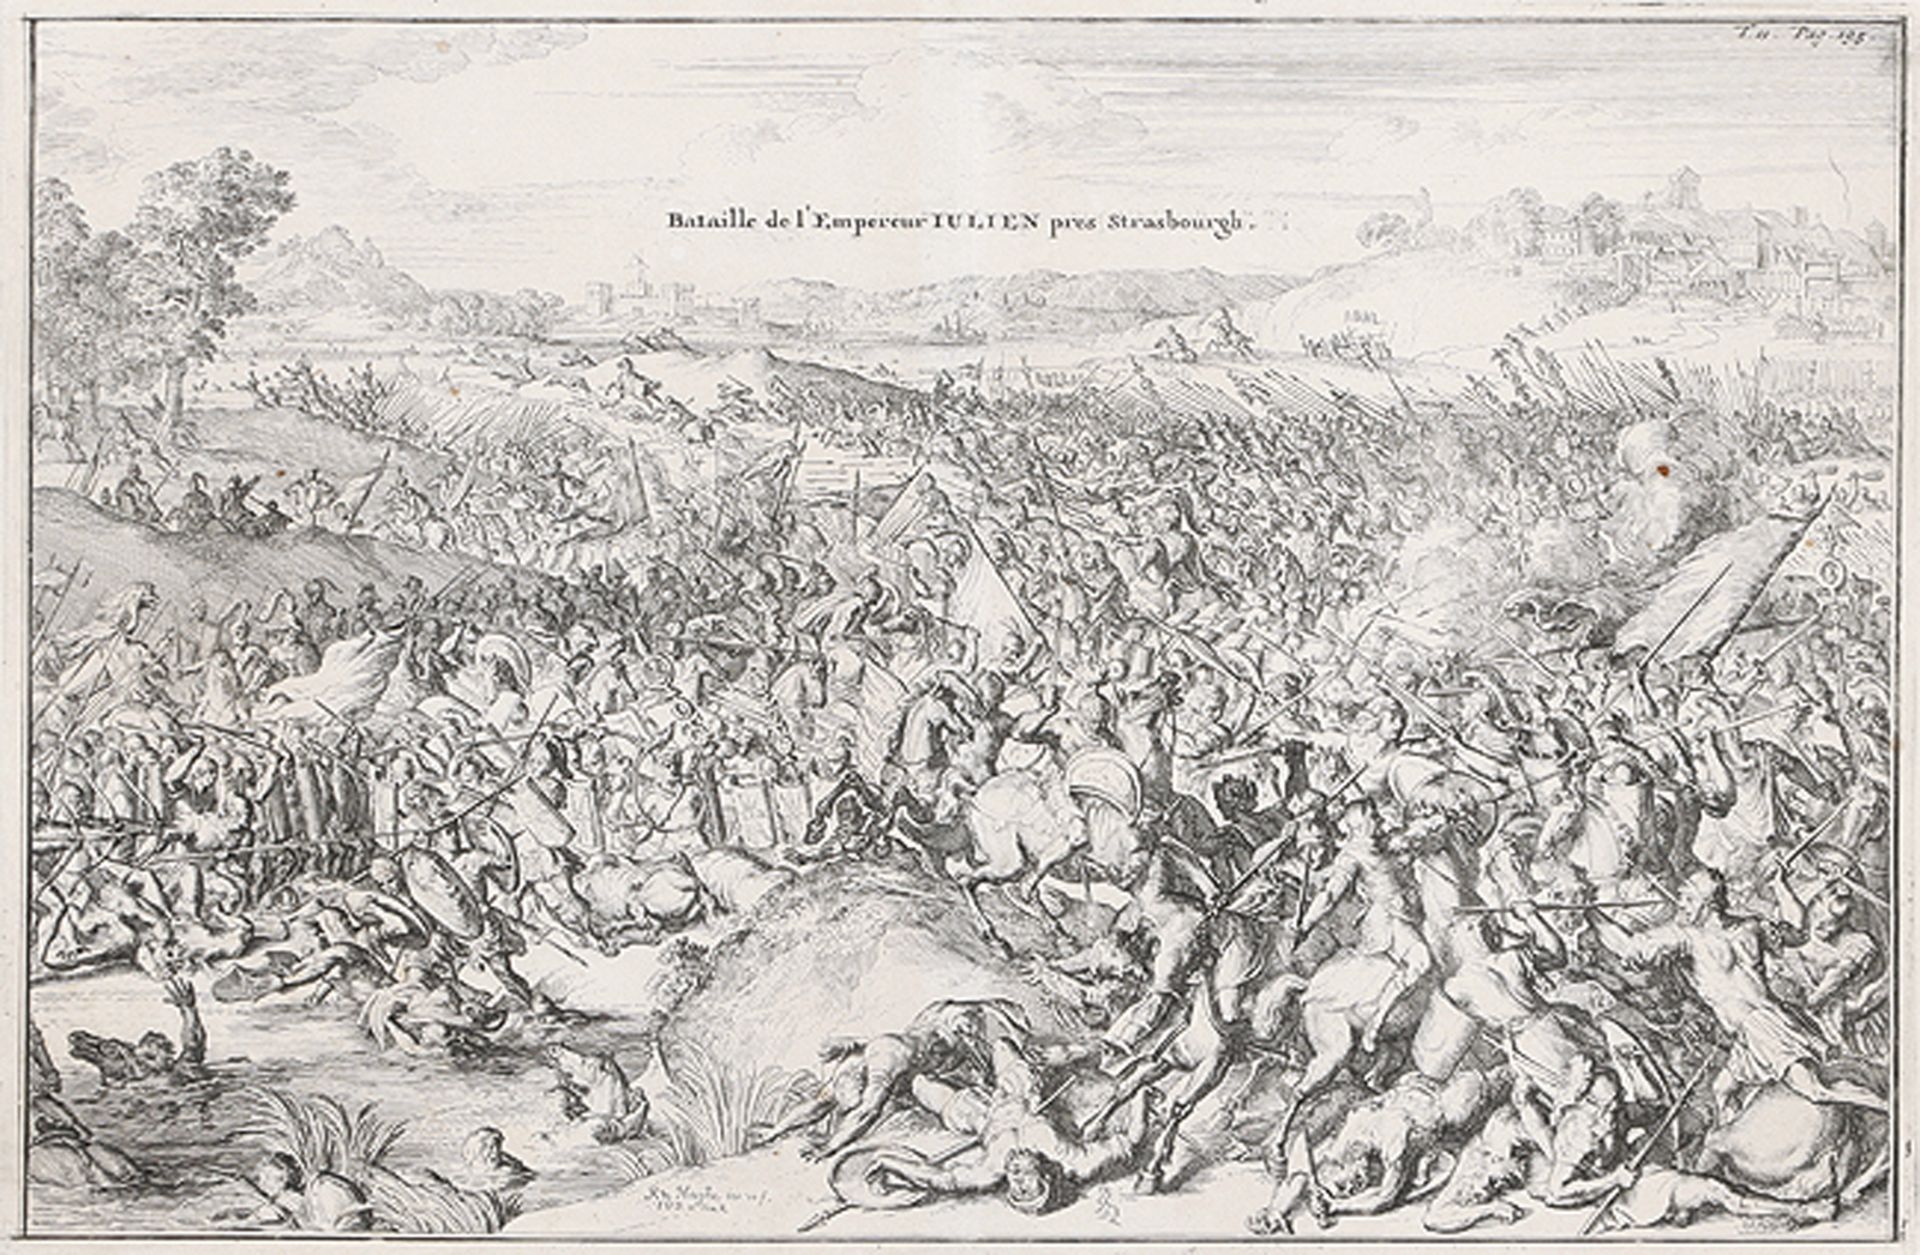 ROMEYN DE HOOGHE: Bataille de l'Empereur Iulien près Strasbourgh.